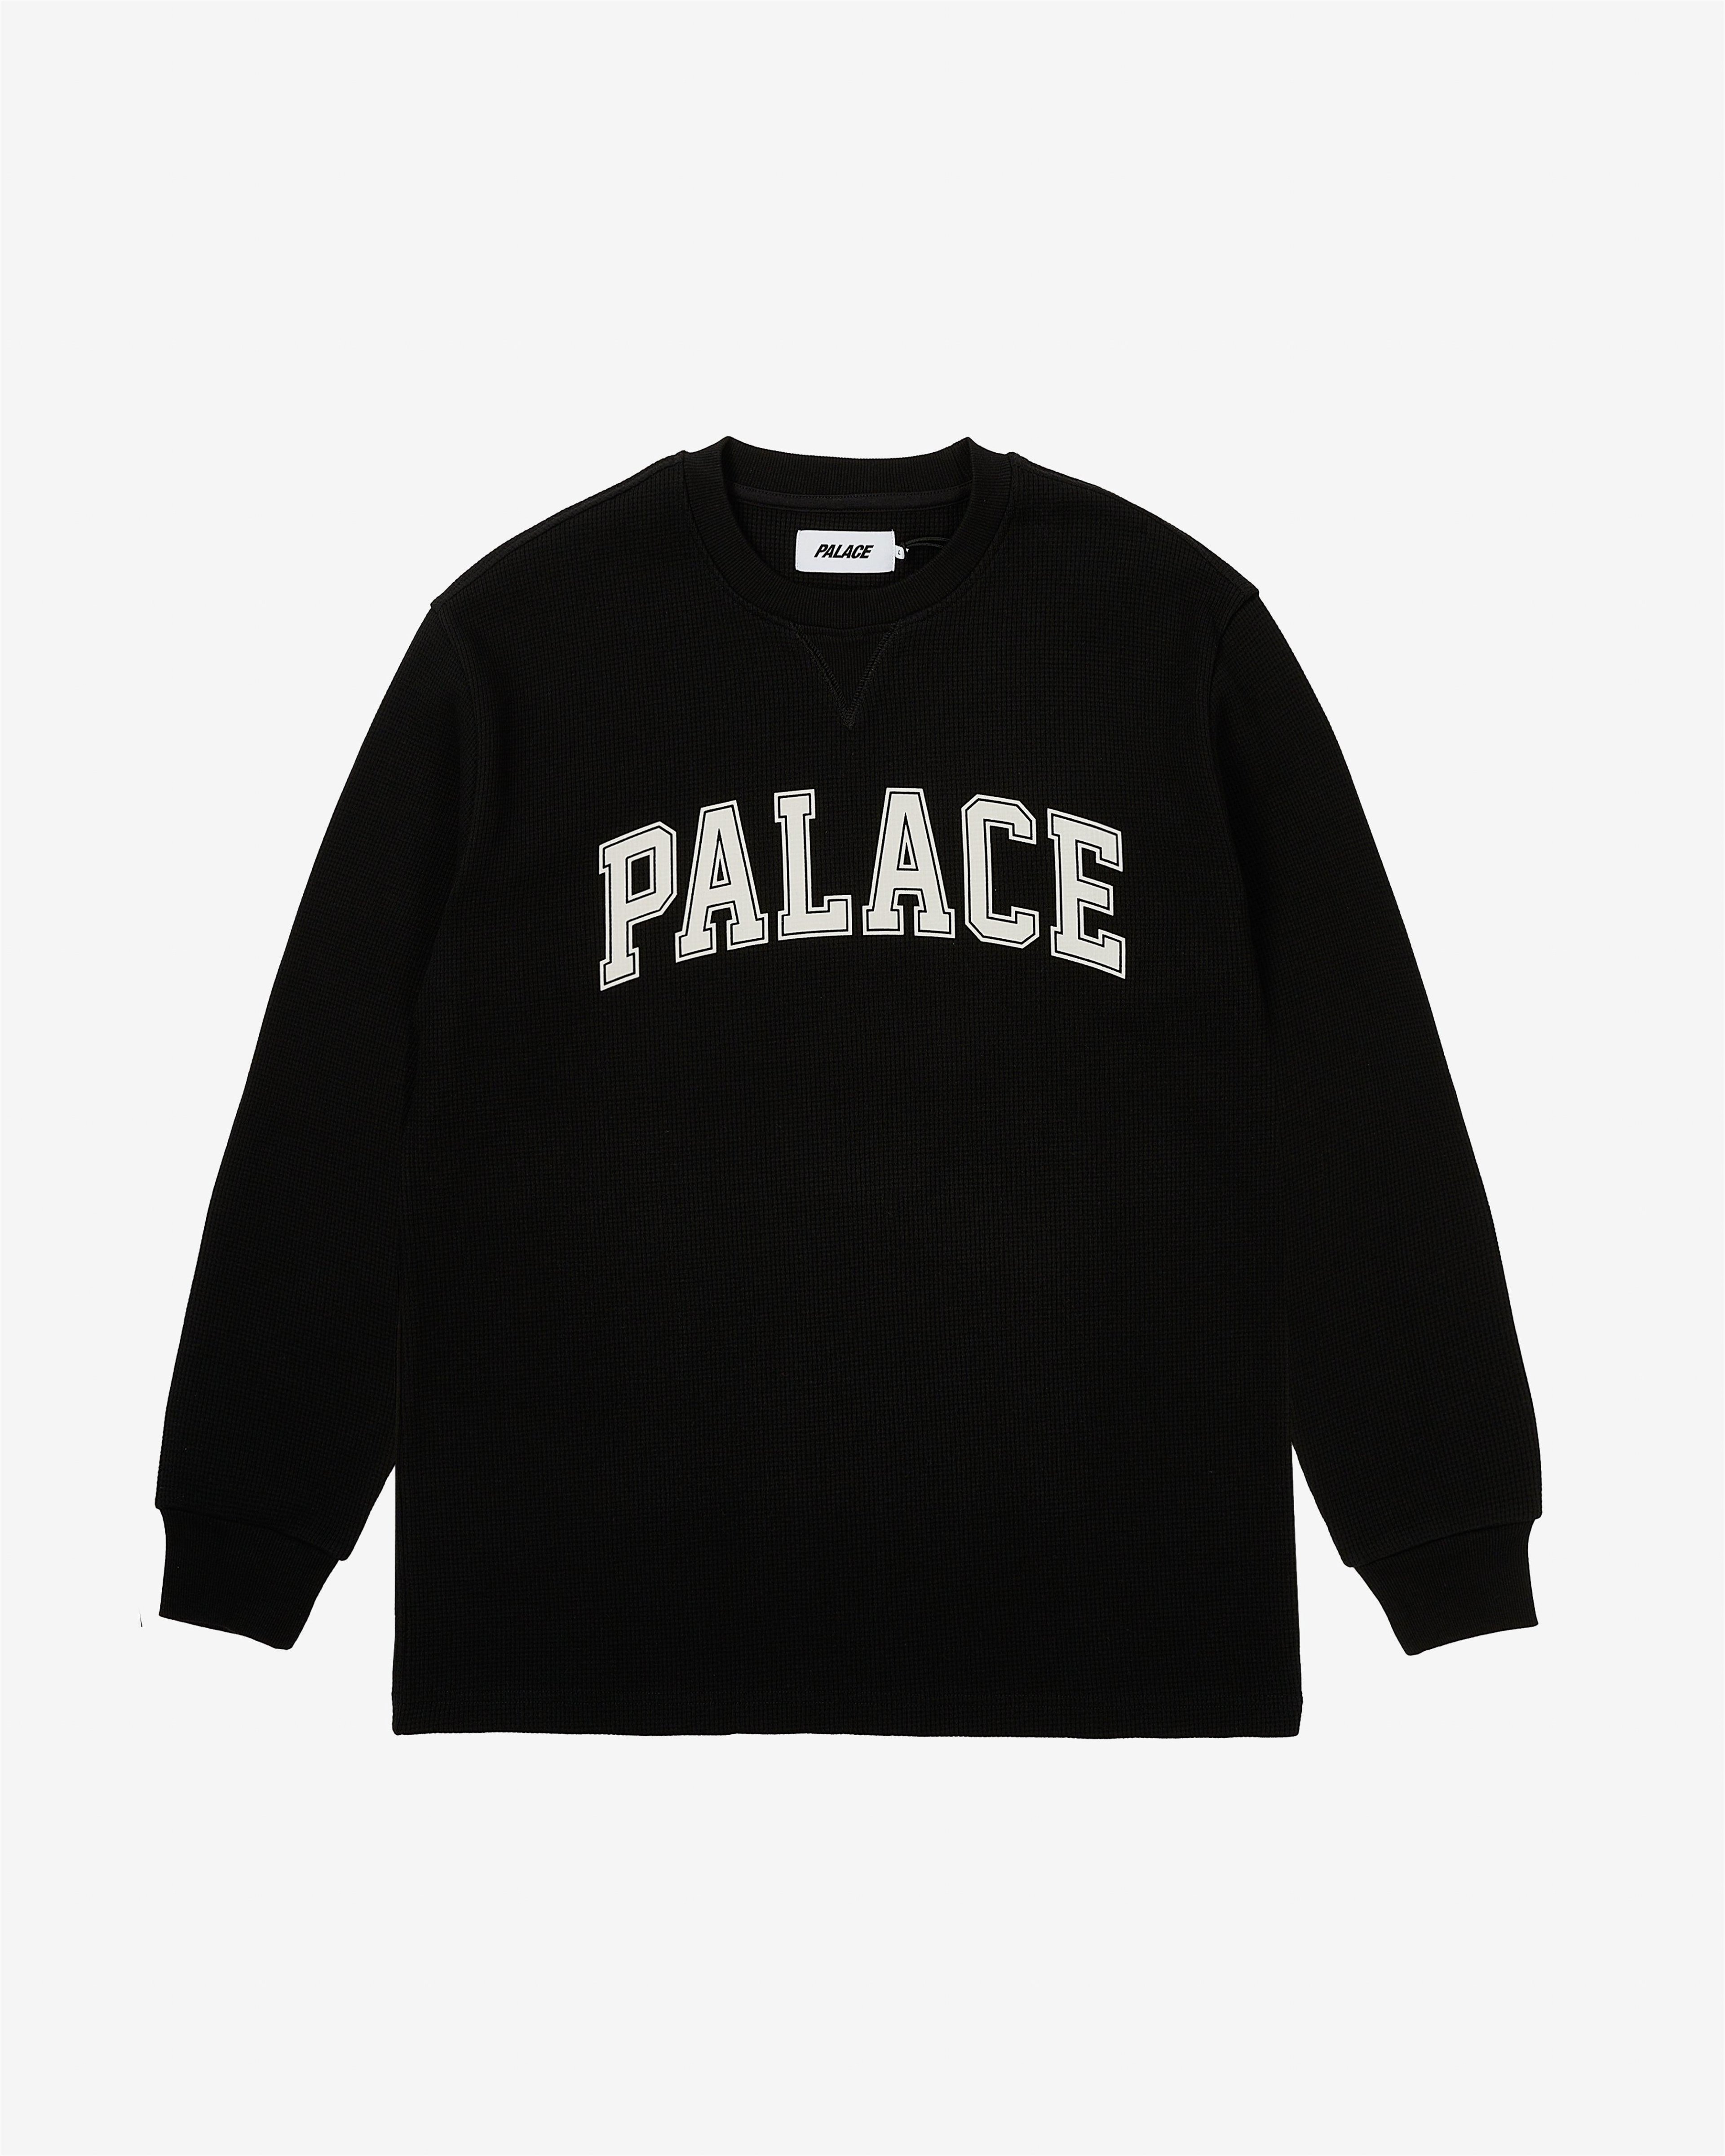 Palace - Men's Waffle Longsleeve - (Black) by PALACE